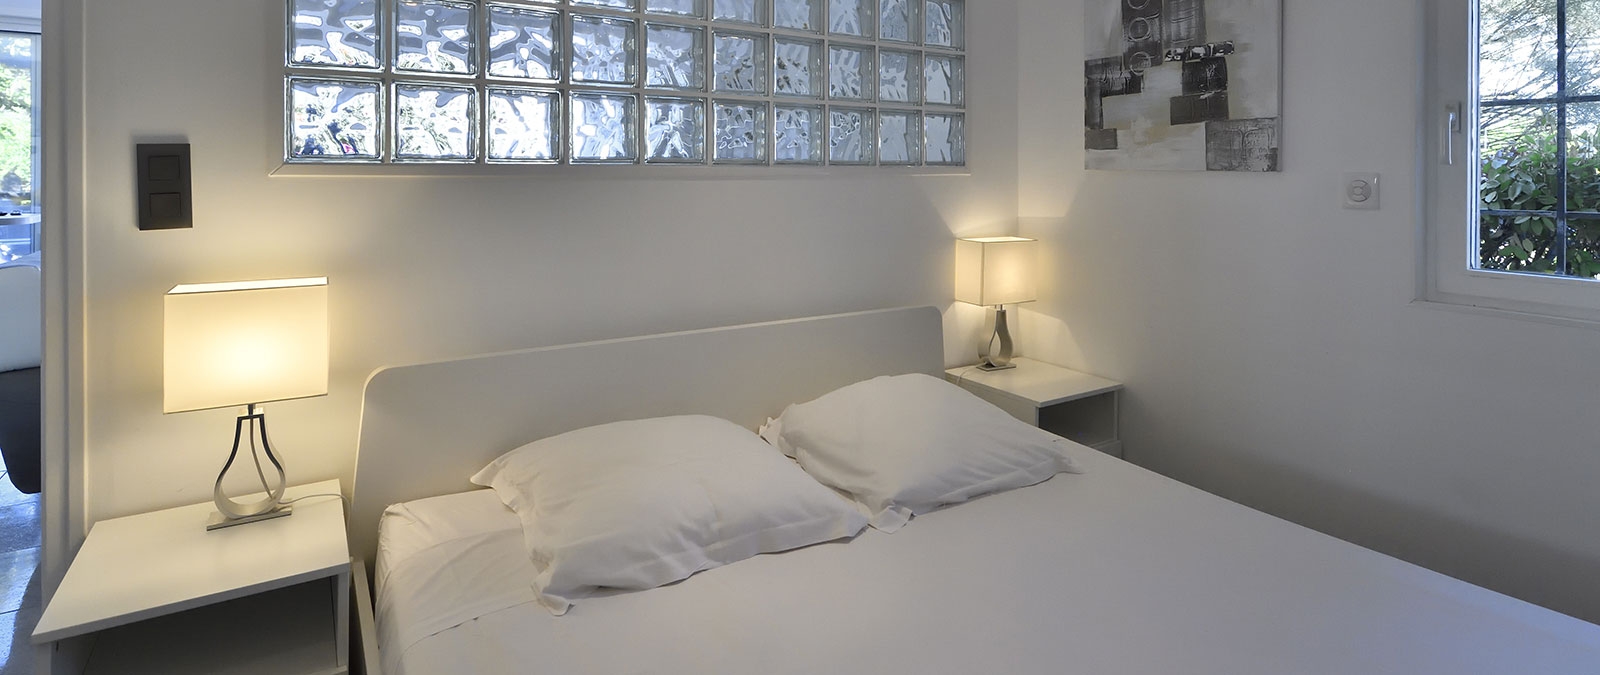 Swinger-Apartmenthaus Fifty Shades Schlafzimmer mit Doppelbett